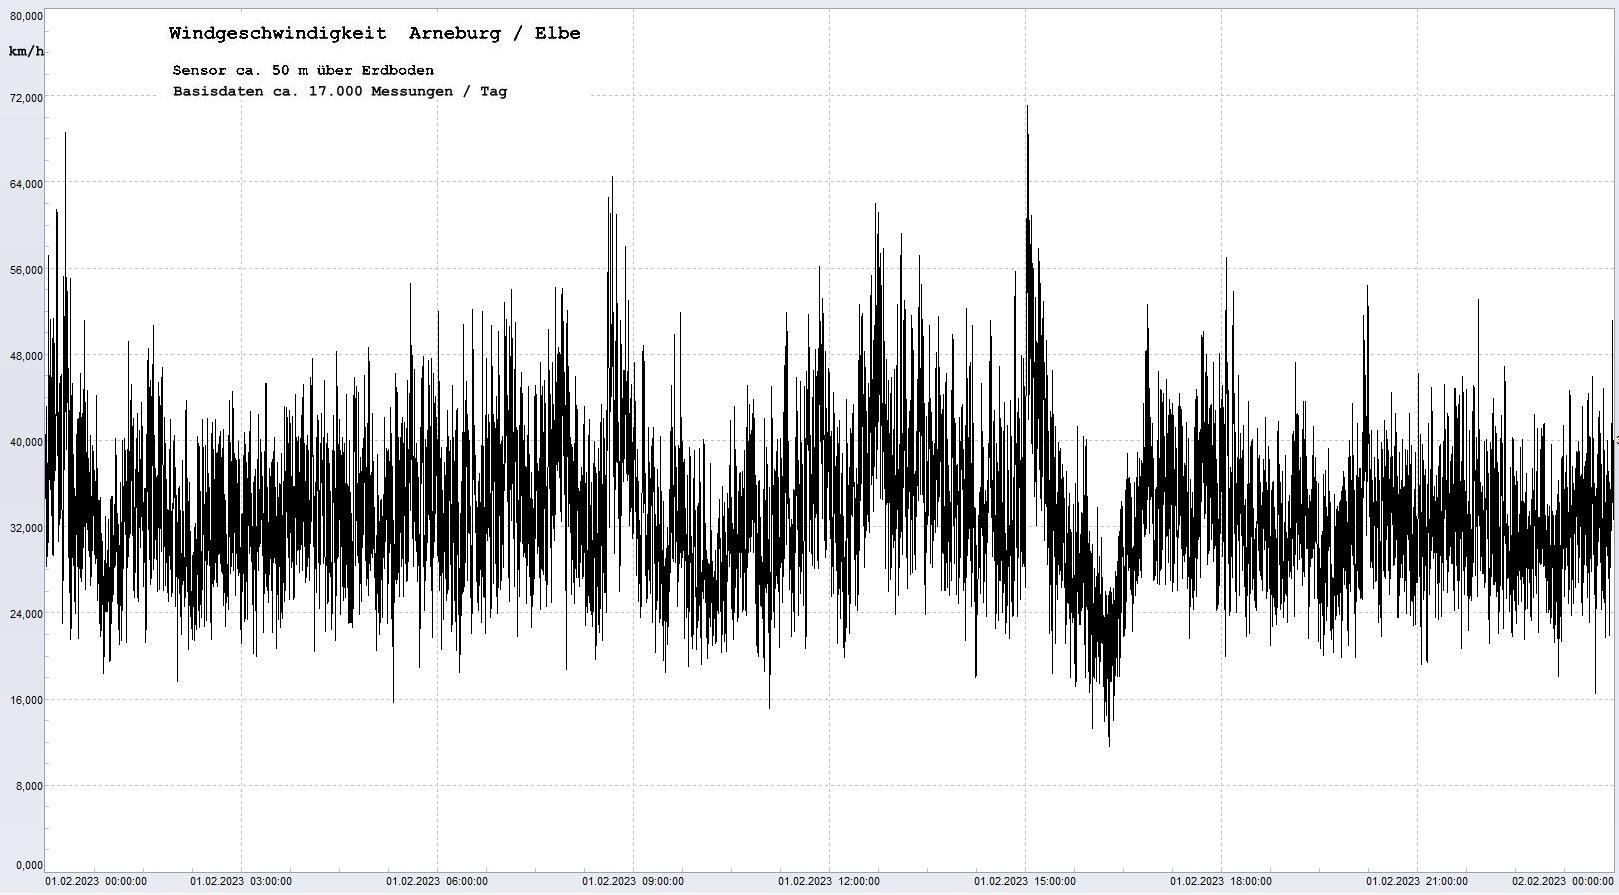 Arneburg Tages-Diagramm Winddaten, 01.02.2023
  Diagramm, Sensor auf Gebäude, ca. 50 m über Erdboden, Basis: 5s-Aufzeichnung